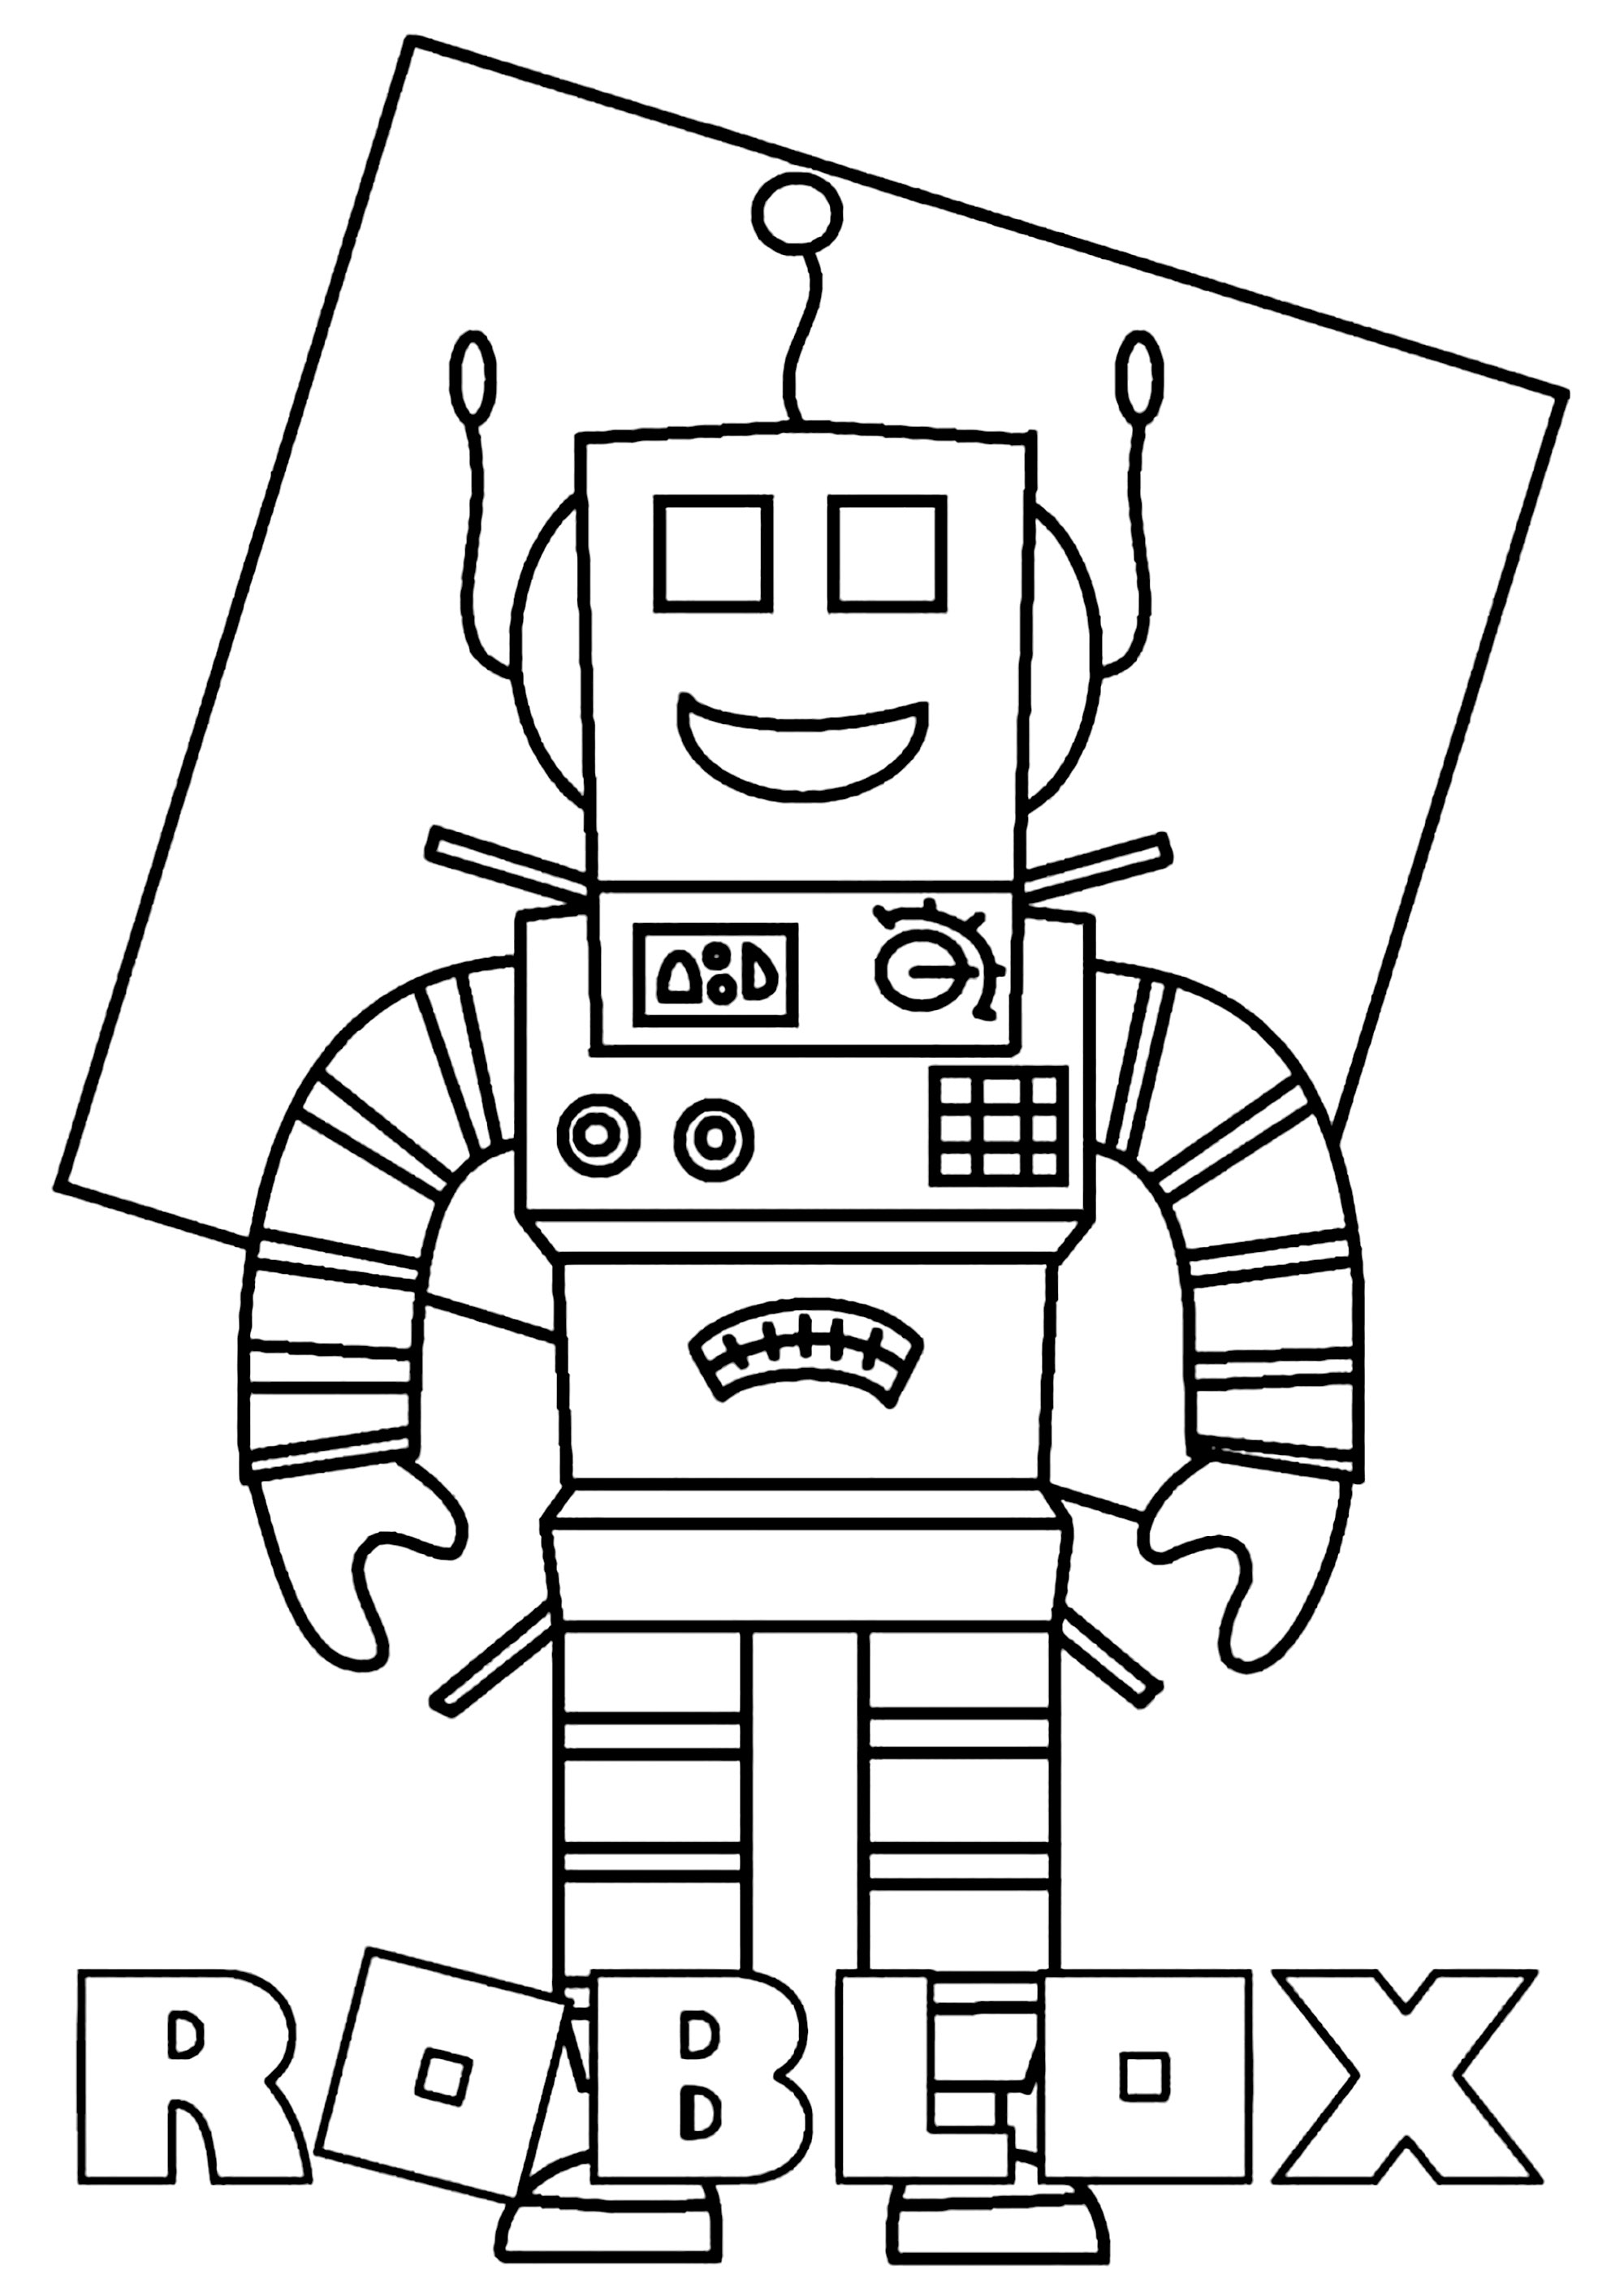 Roblox: o robô - Roblox - Just Color Crianças : Páginas para colorir para  crianças